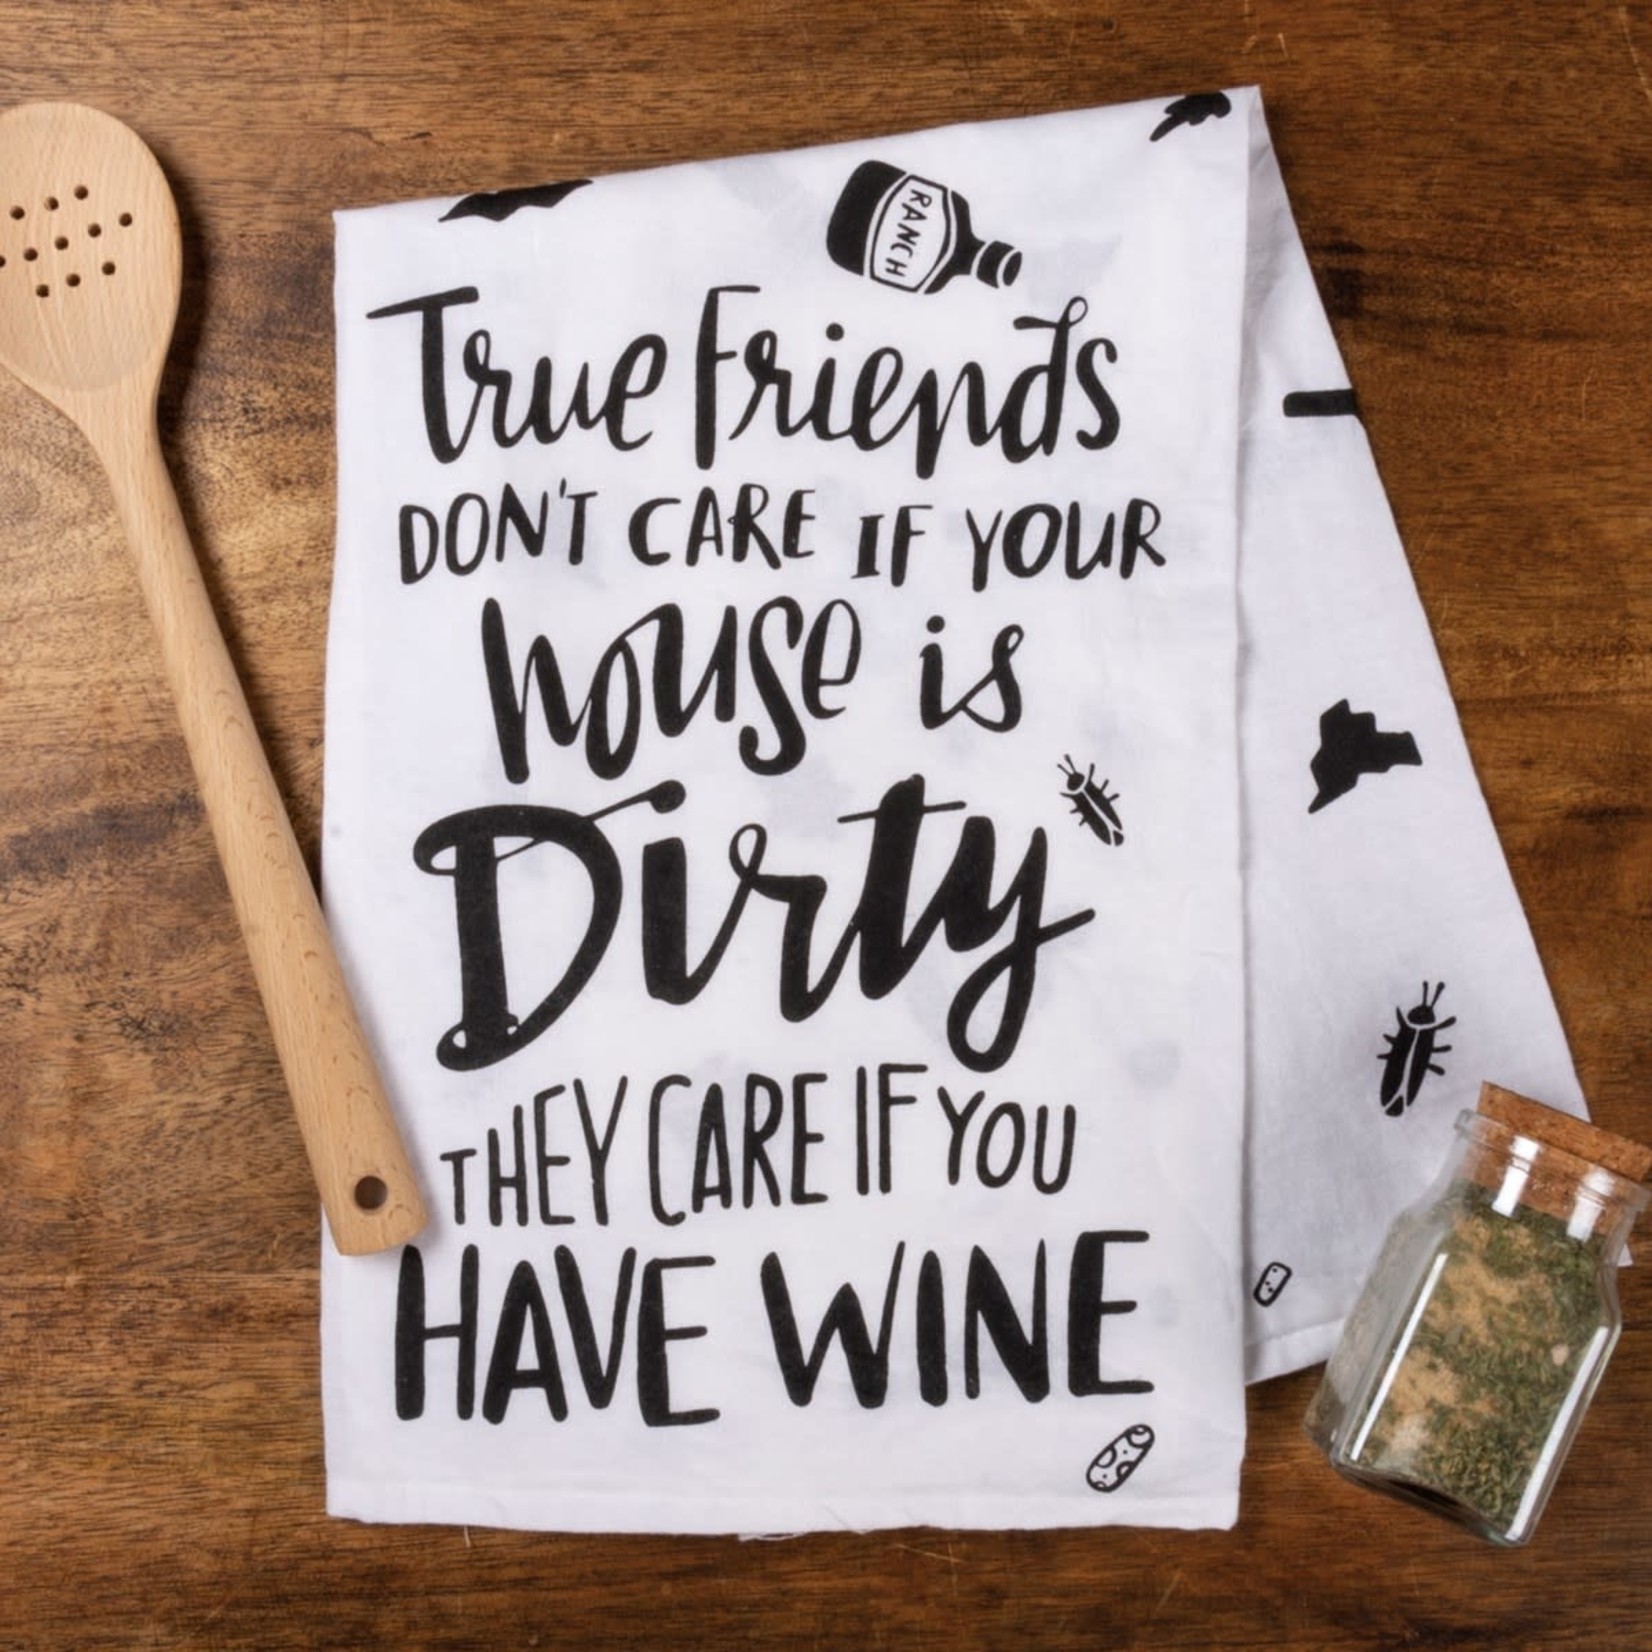 "TRUE FRIENDS" DISH TOWEL